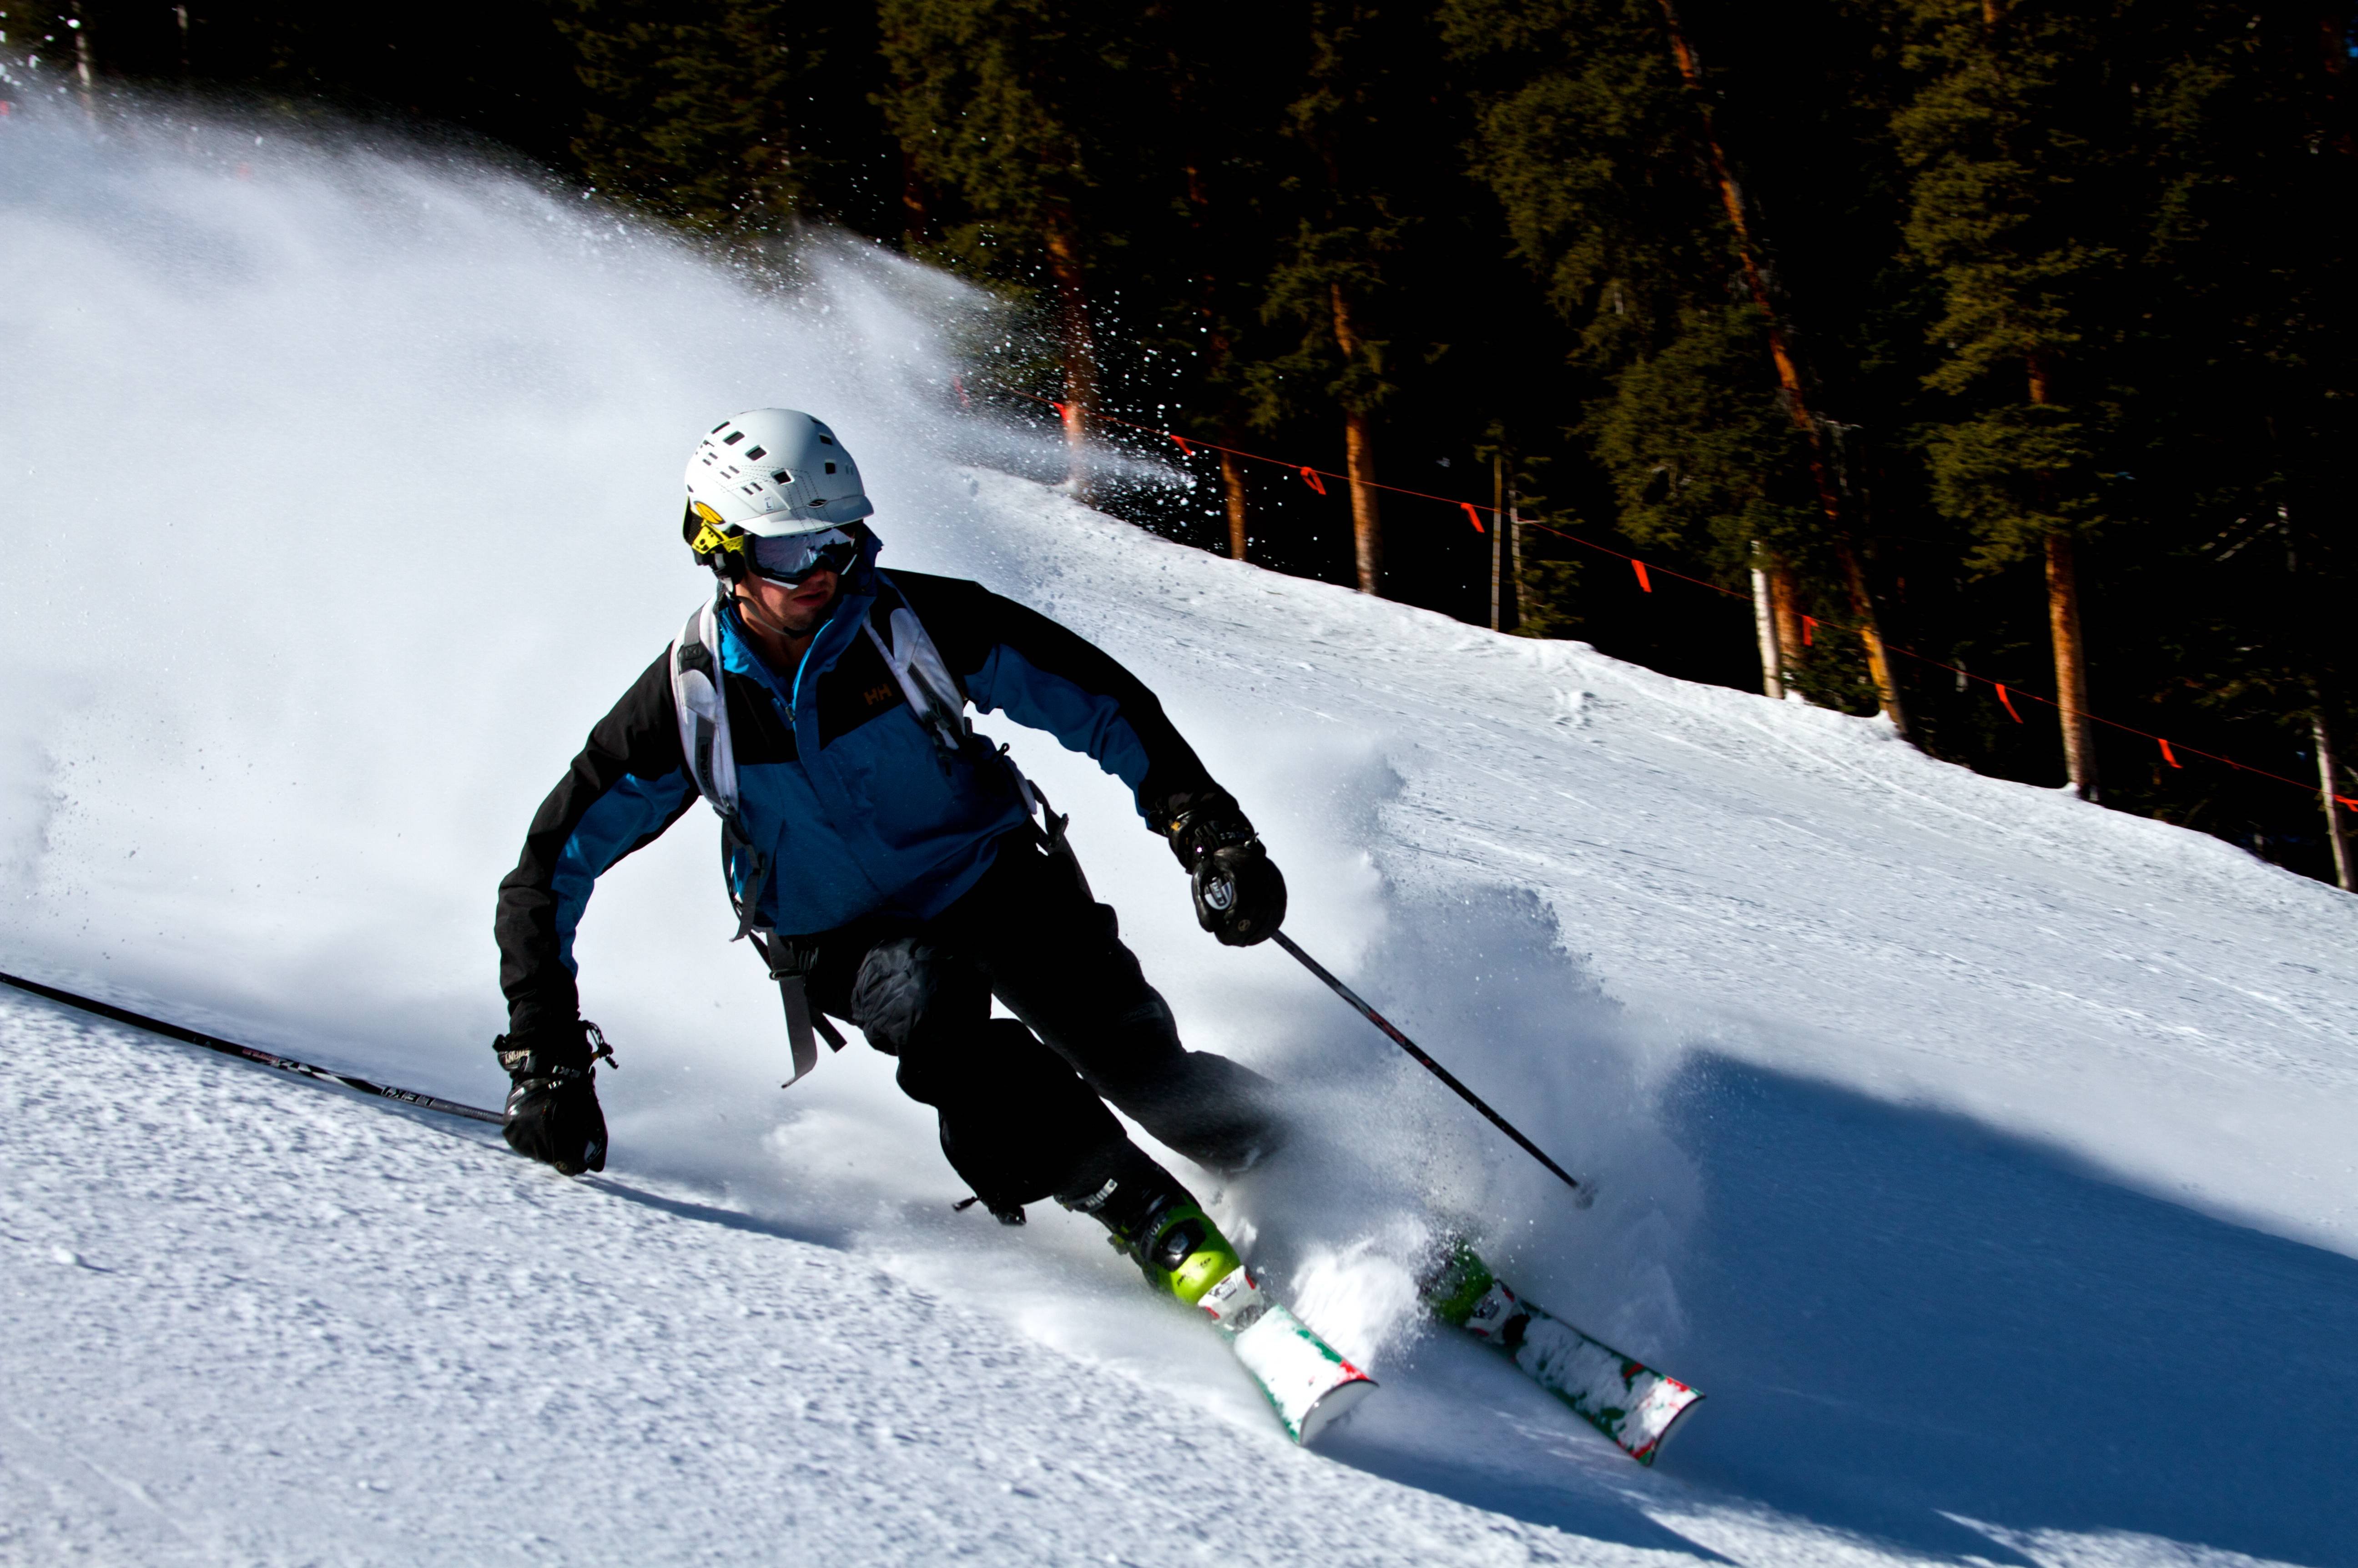 Great skiing. Горнолыжный спорт. Горные лыжи. Лыжник на склоне. Спуск на горных лыжах.